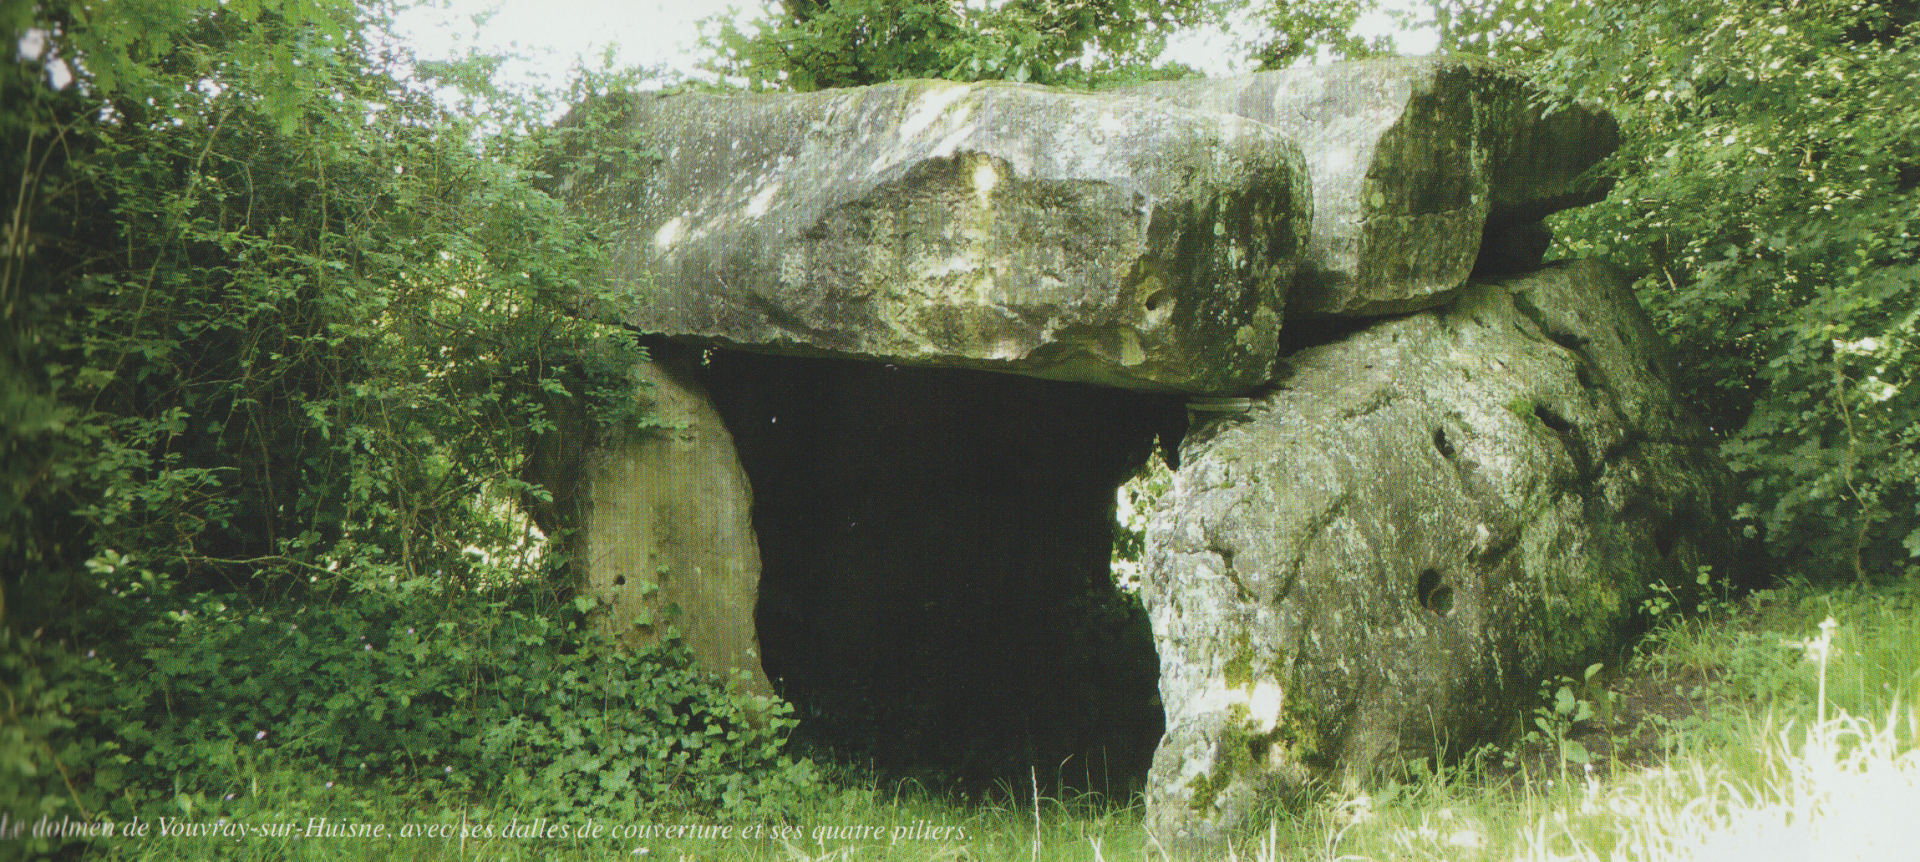 Le dolmen de vouvray sur huisne 1